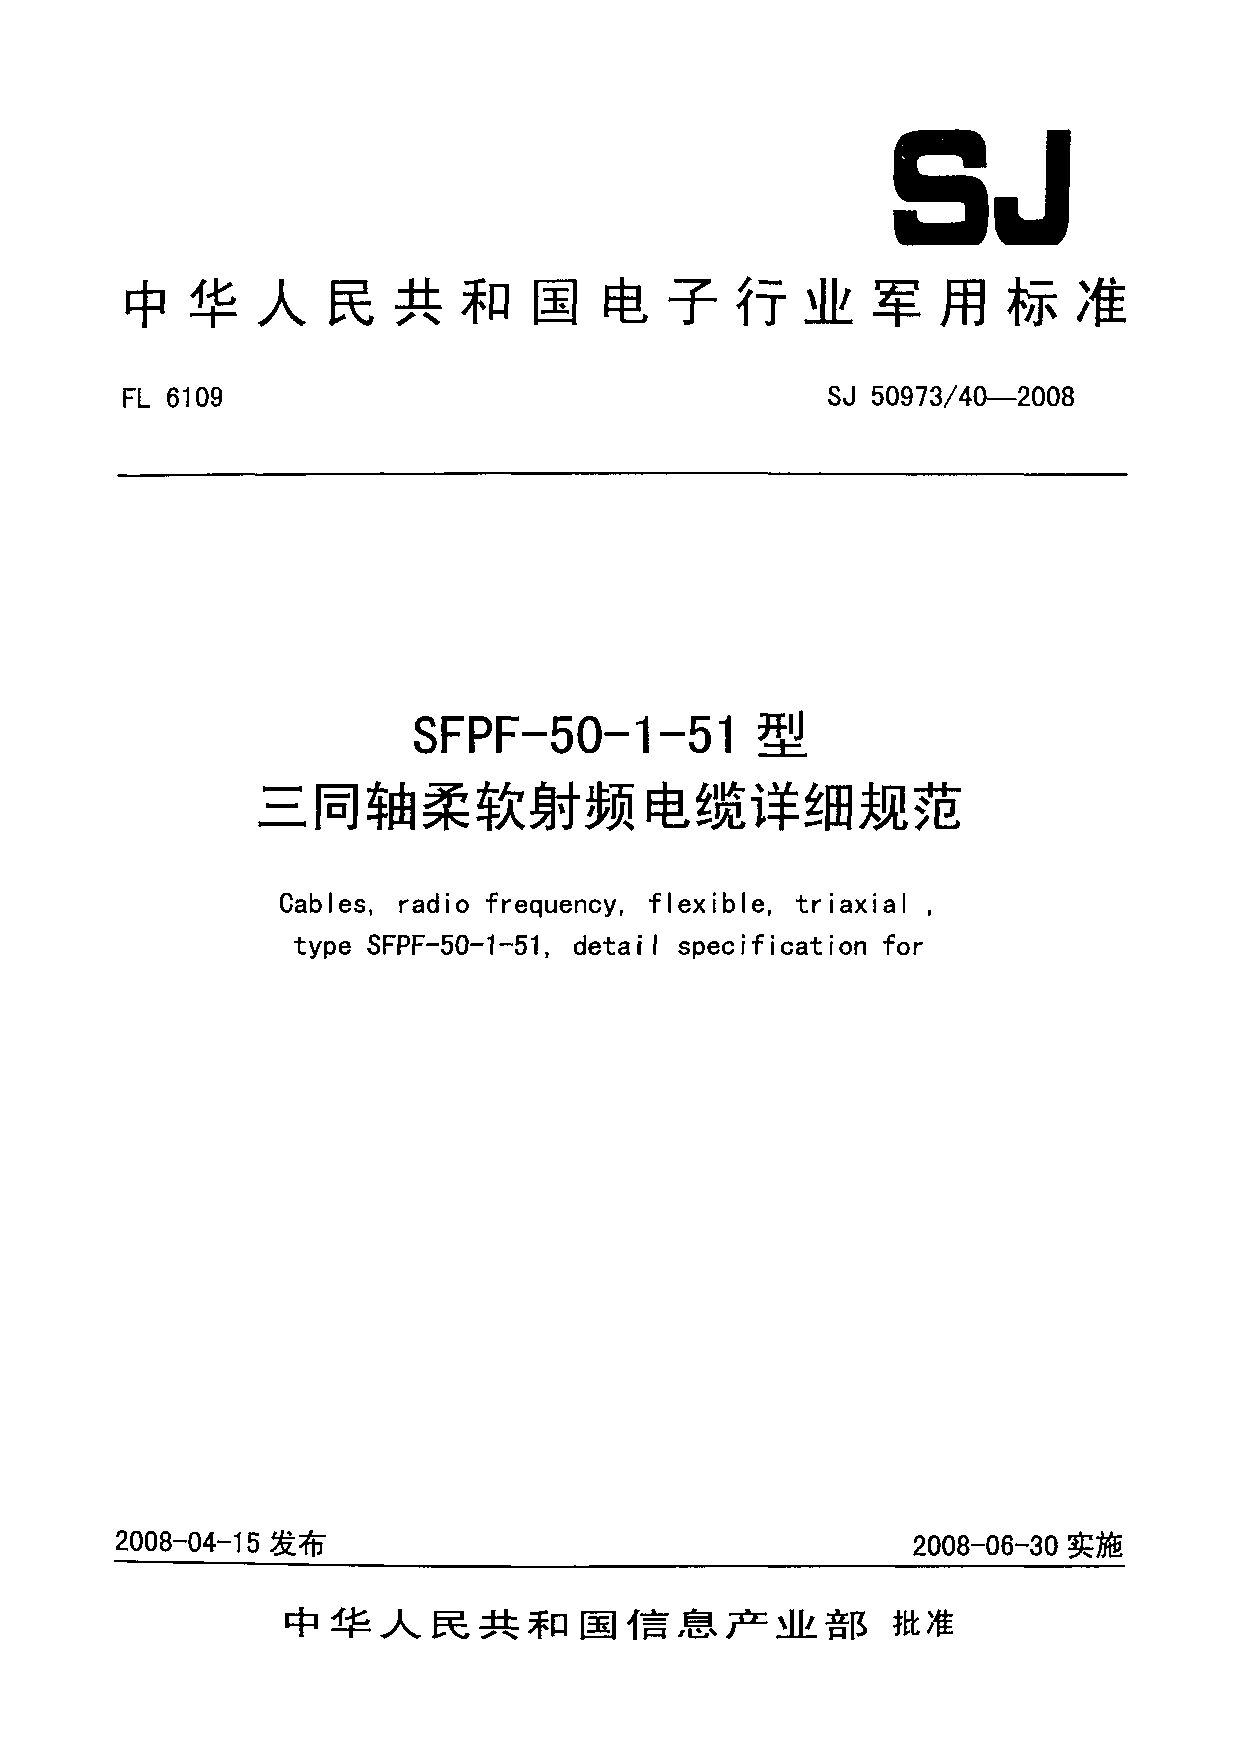 SJ 50973/40-2008封面图